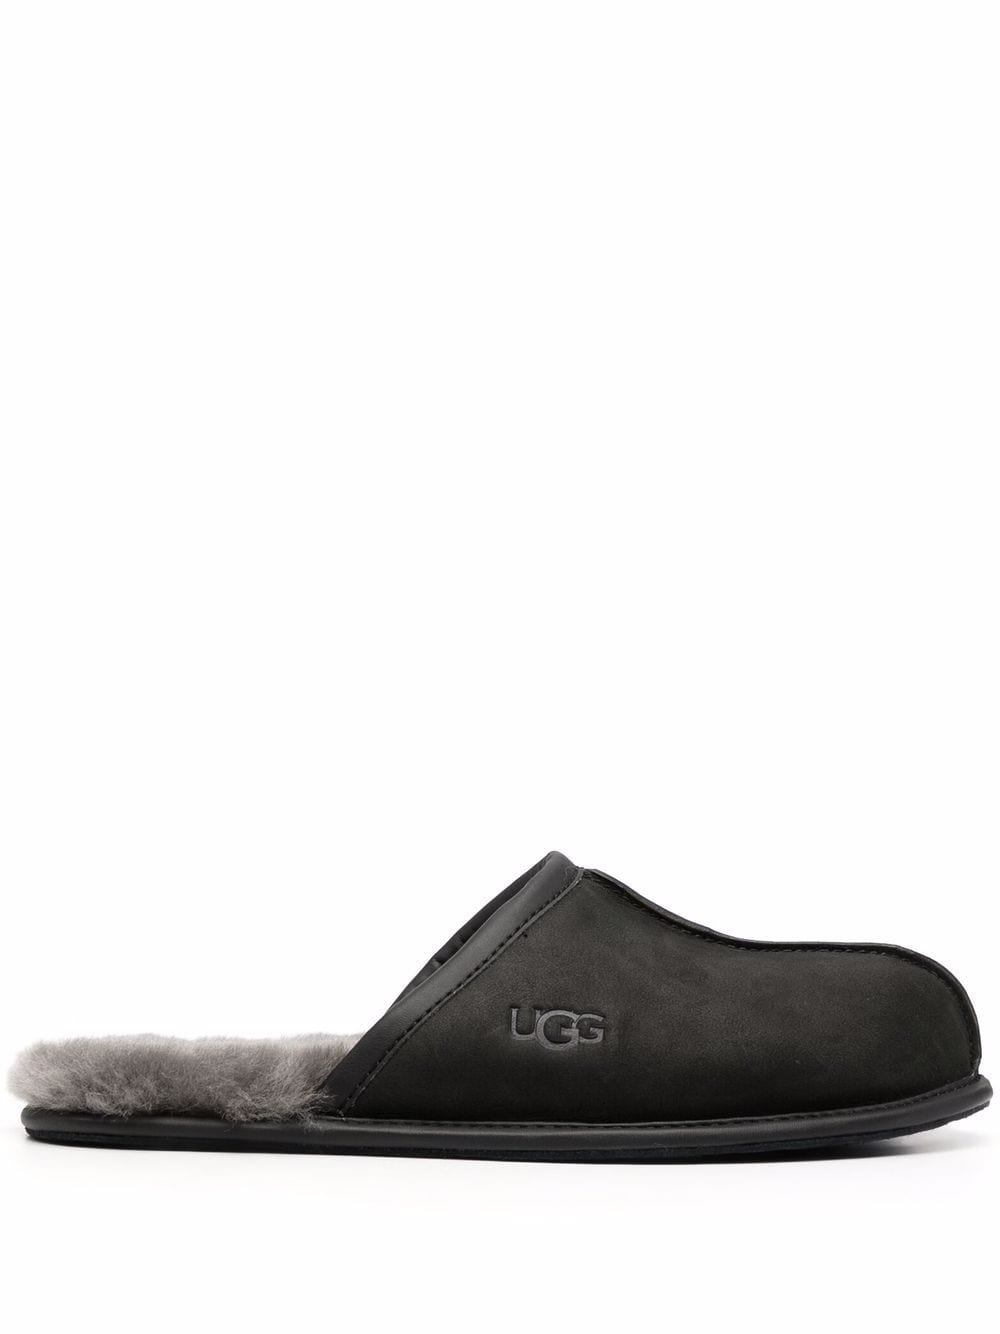 UGG Scuff leather slippers - Black von UGG